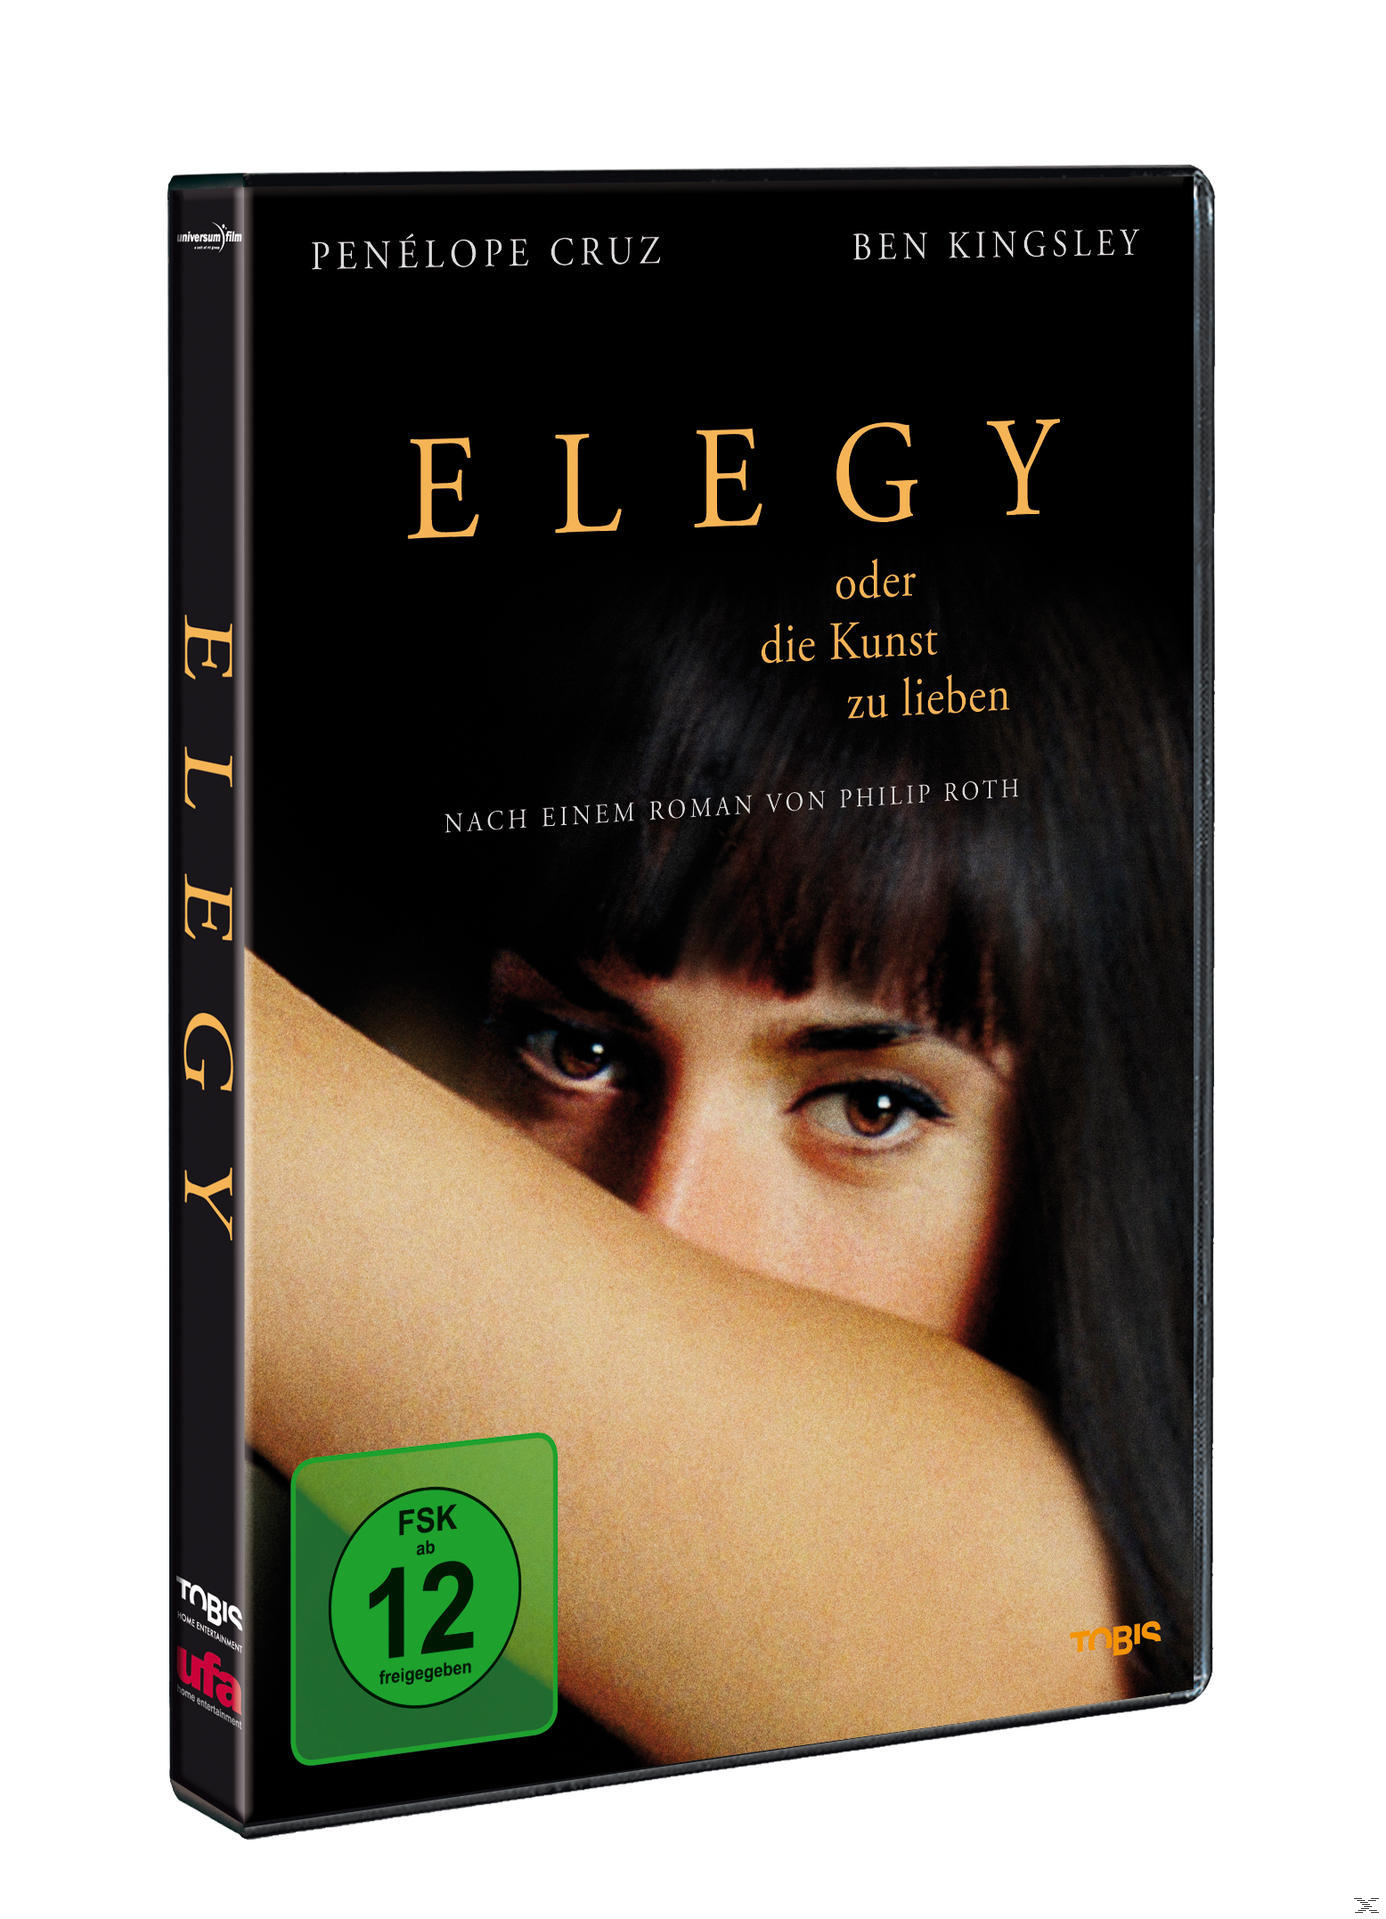 Elegy oder die zu Kunst lieben DVD